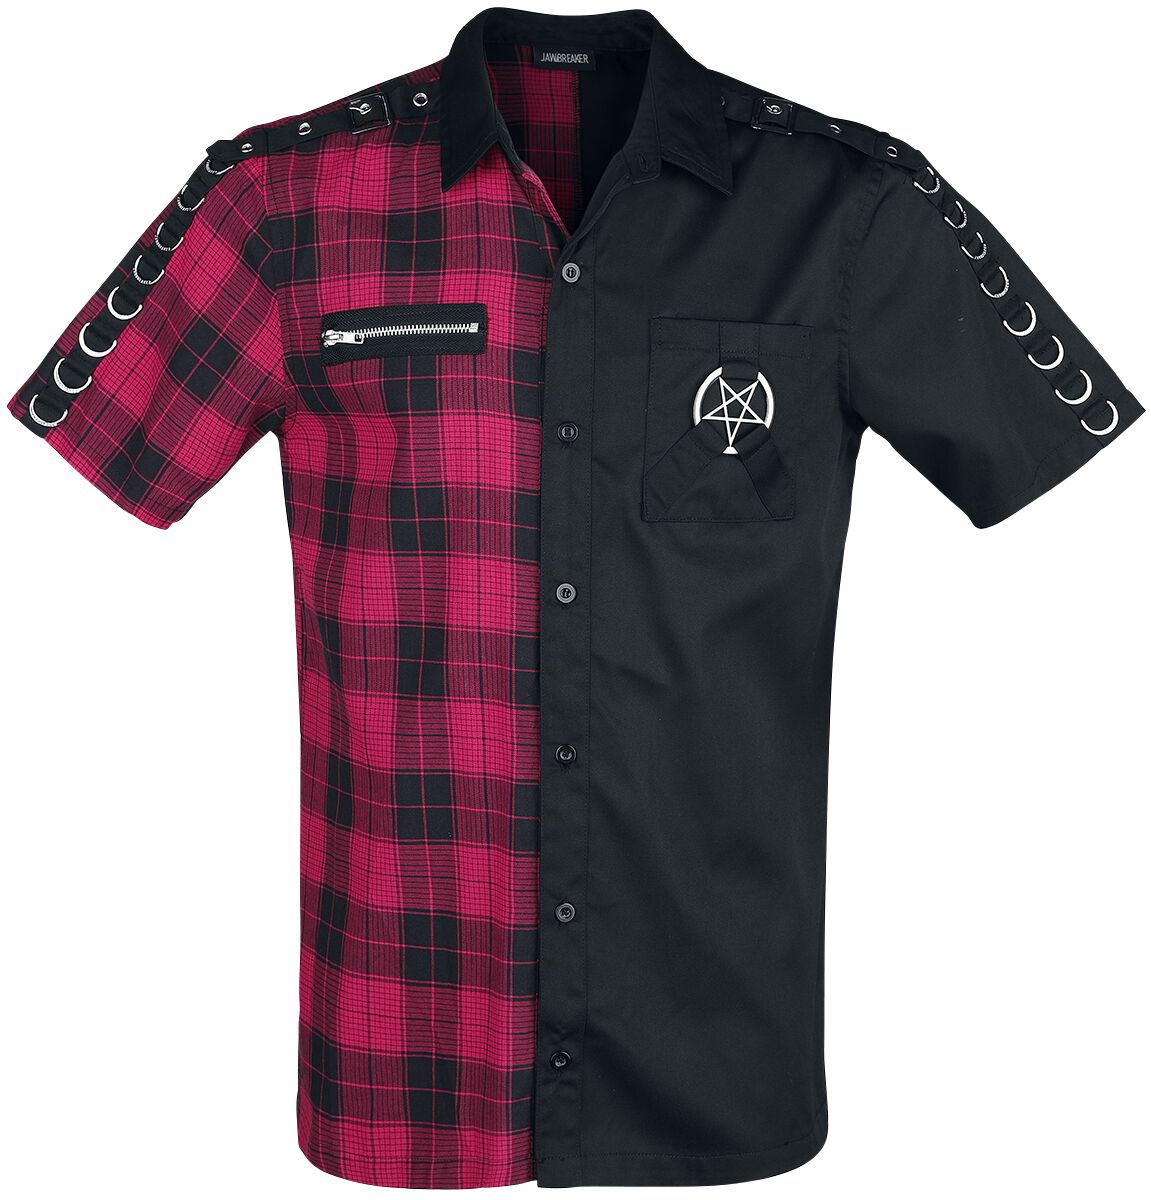 Jawbreaker - Gothic Kurzarmhemd - Split Shirt - S bis XXL - für Männer - Größe S - schwarz/rot von Jawbreaker